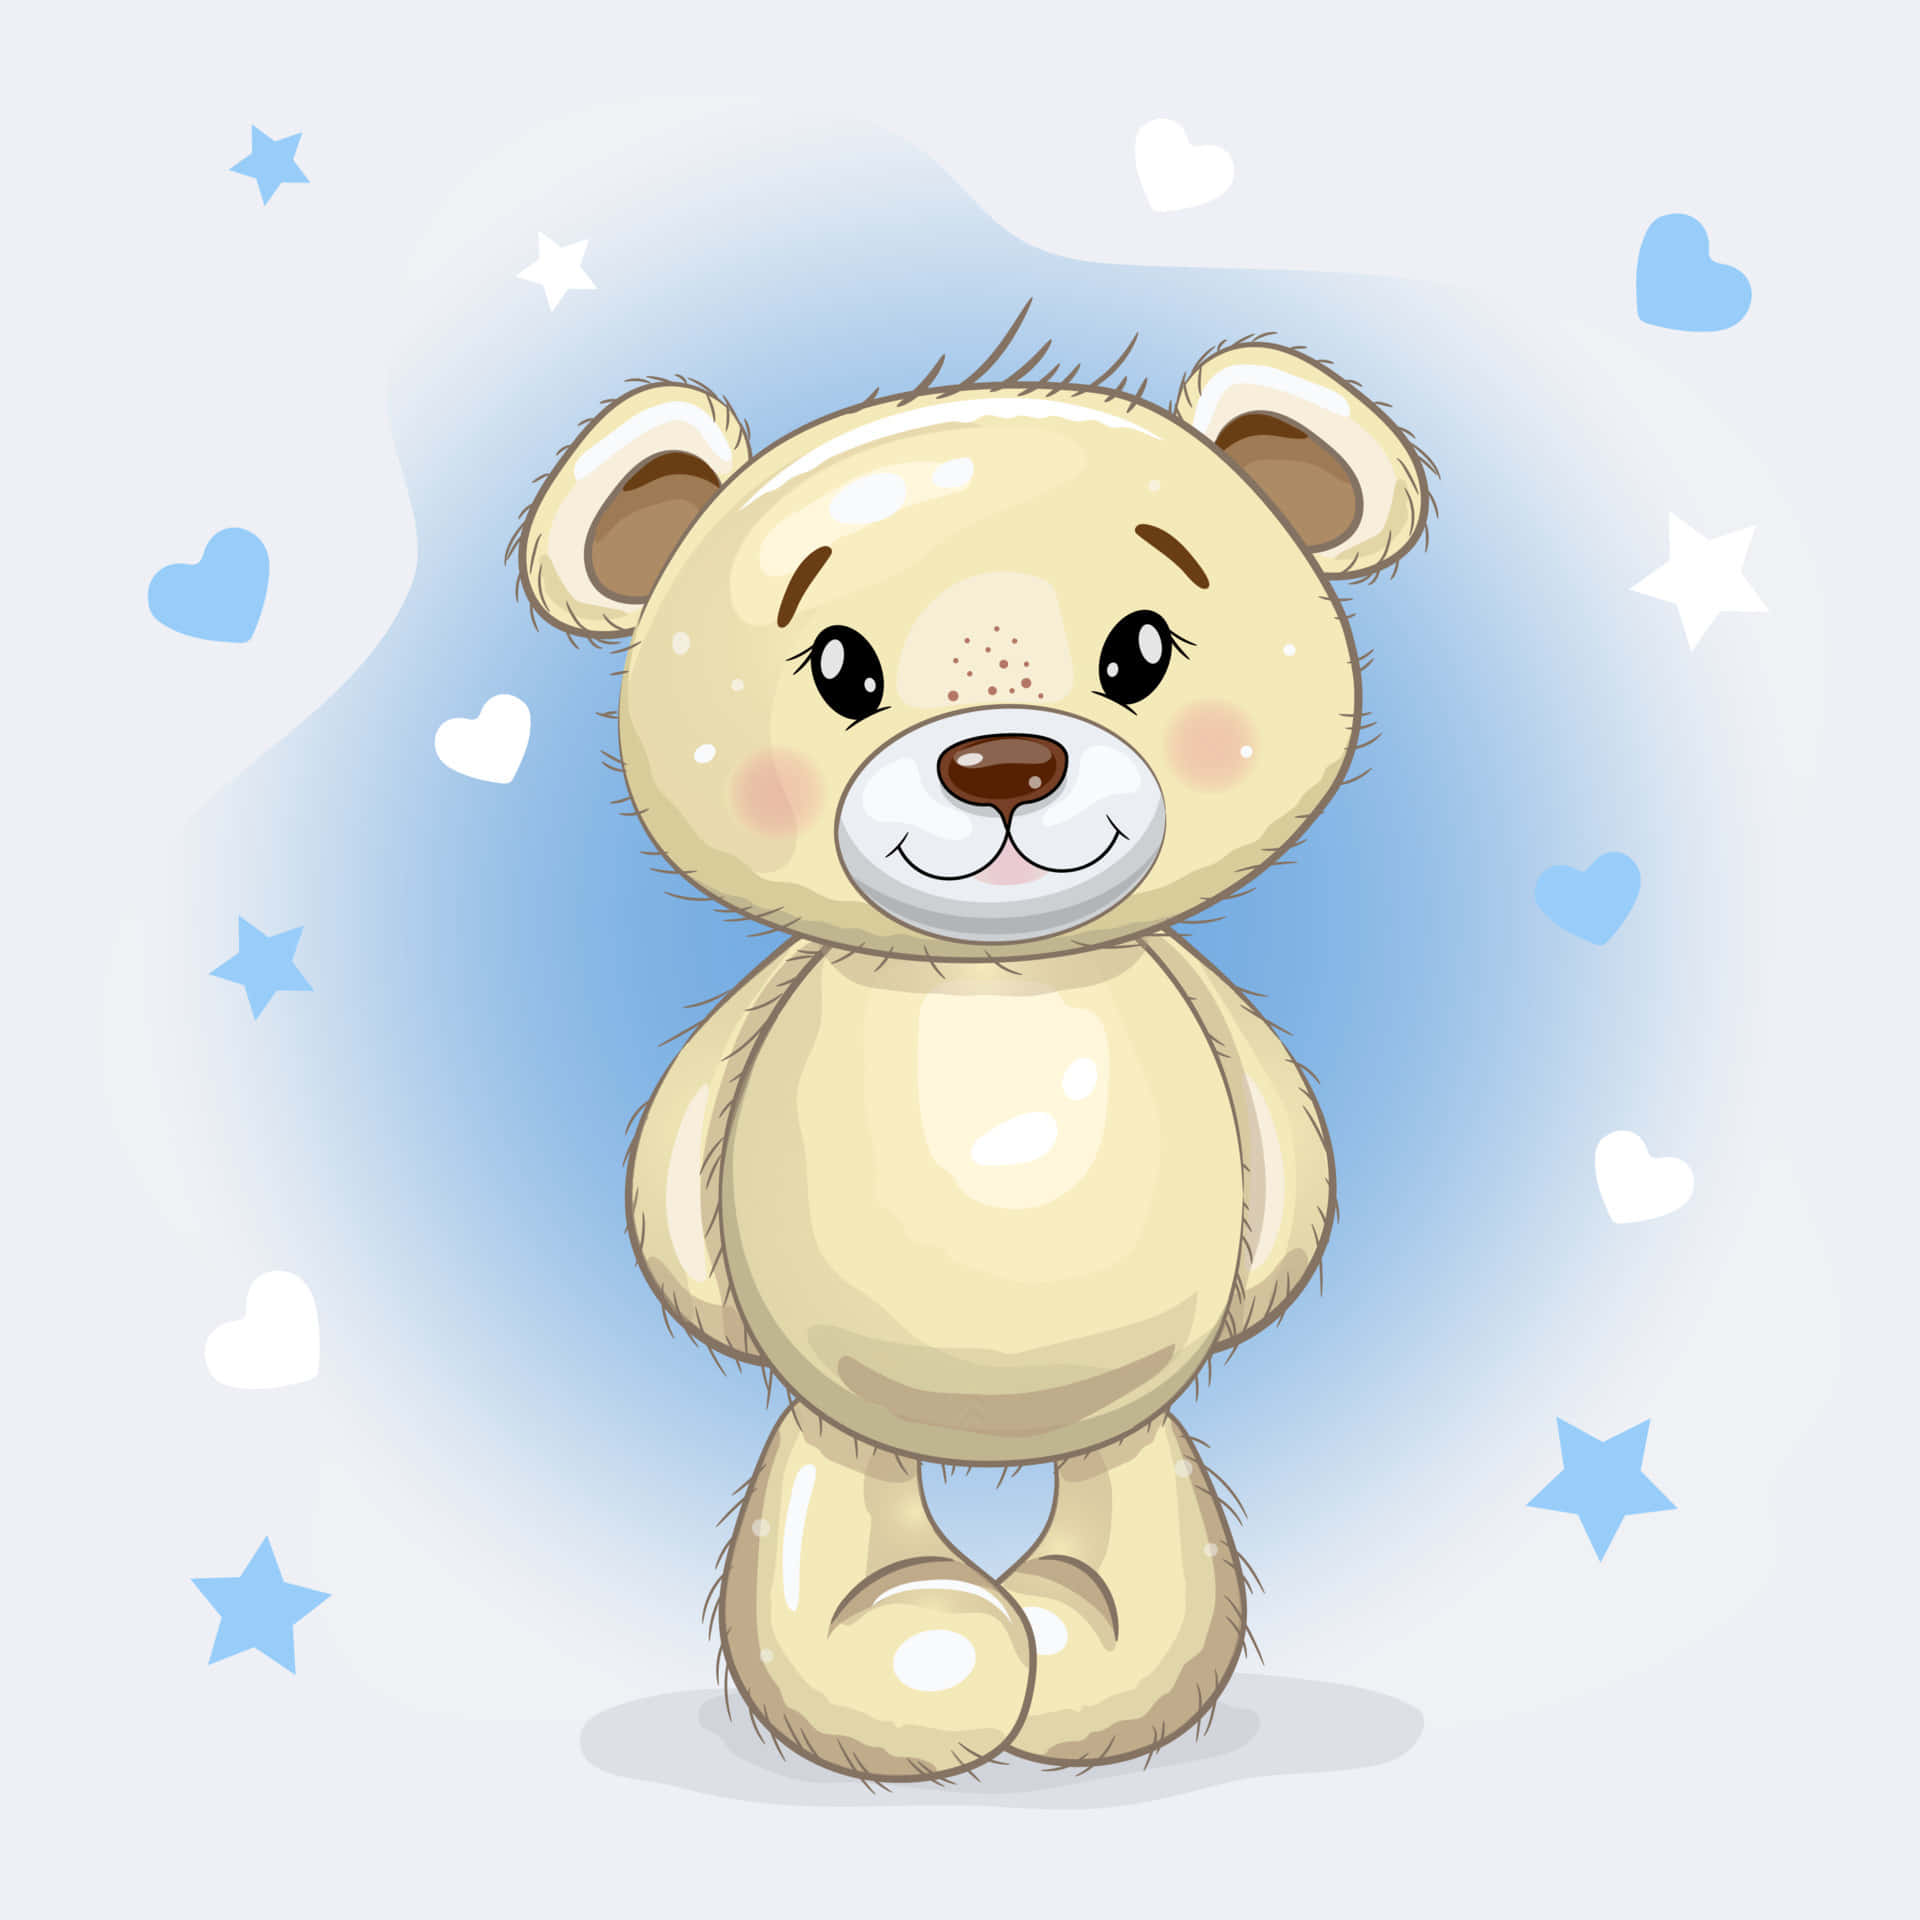 Spredkærlighed Og Glæde Med Denne Varme Og Kærlige Teddybjørn På Din Computer- Eller Mobilbaggrund.